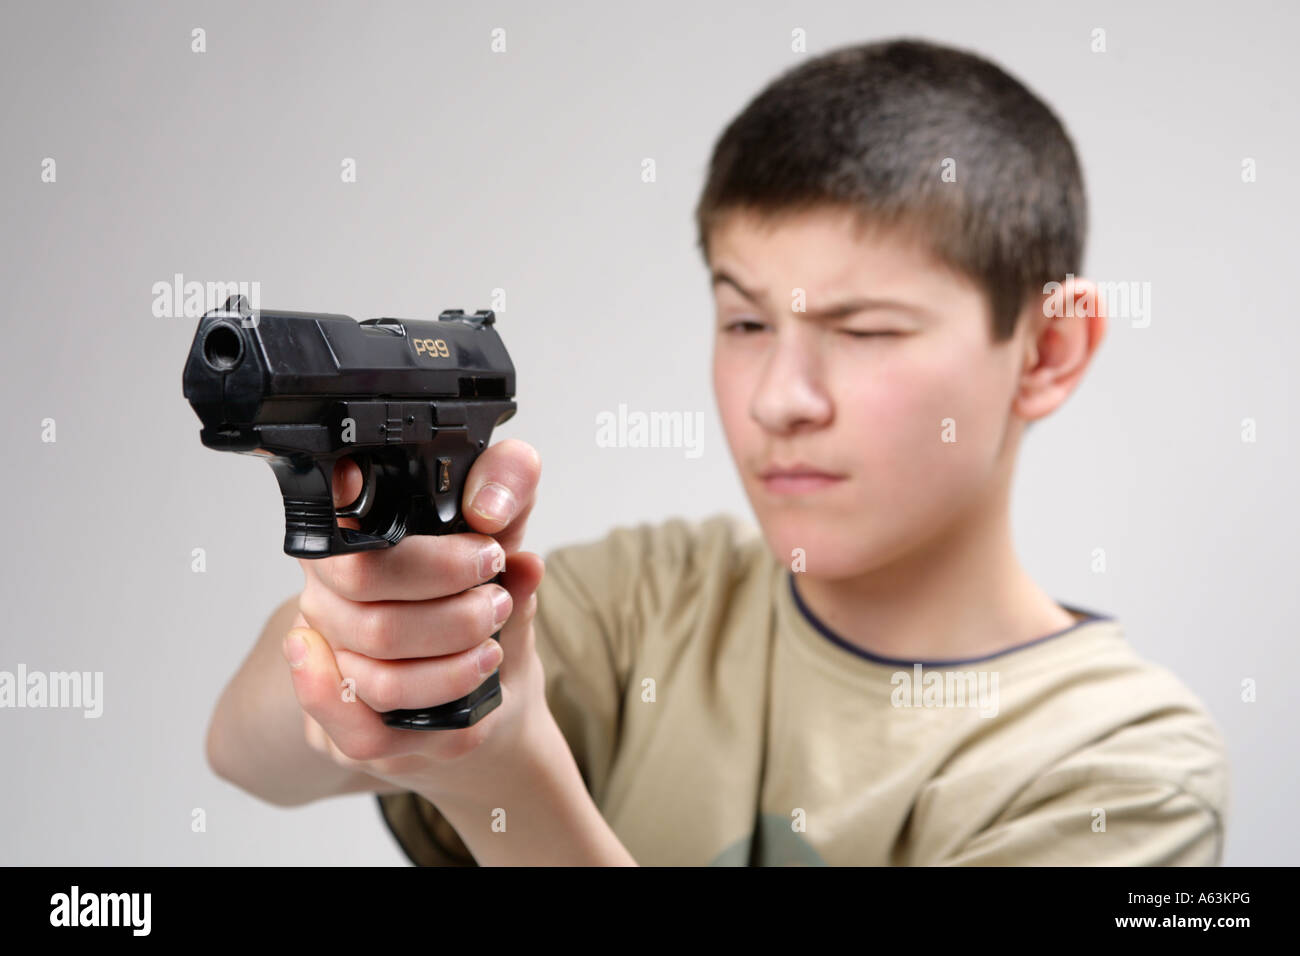 Jeune garçon pointant son pistolet jouet à un ennemi caché Photo Stock -  Alamy